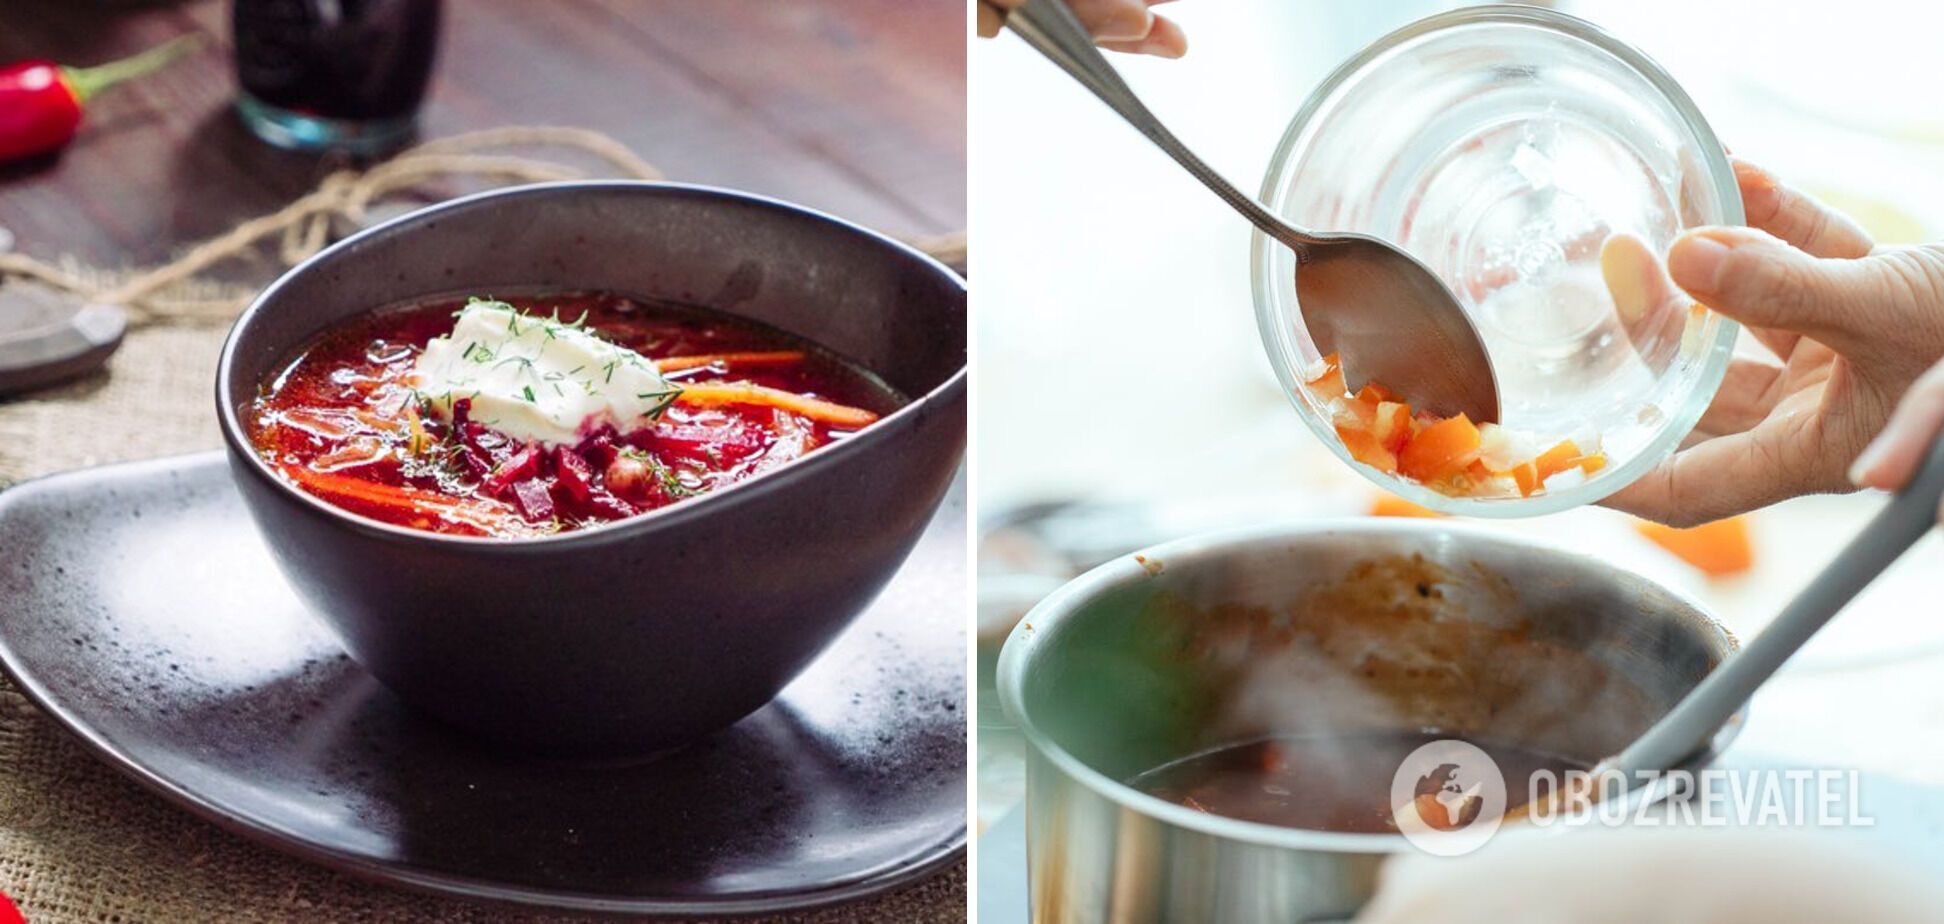 How to cook delicious borscht